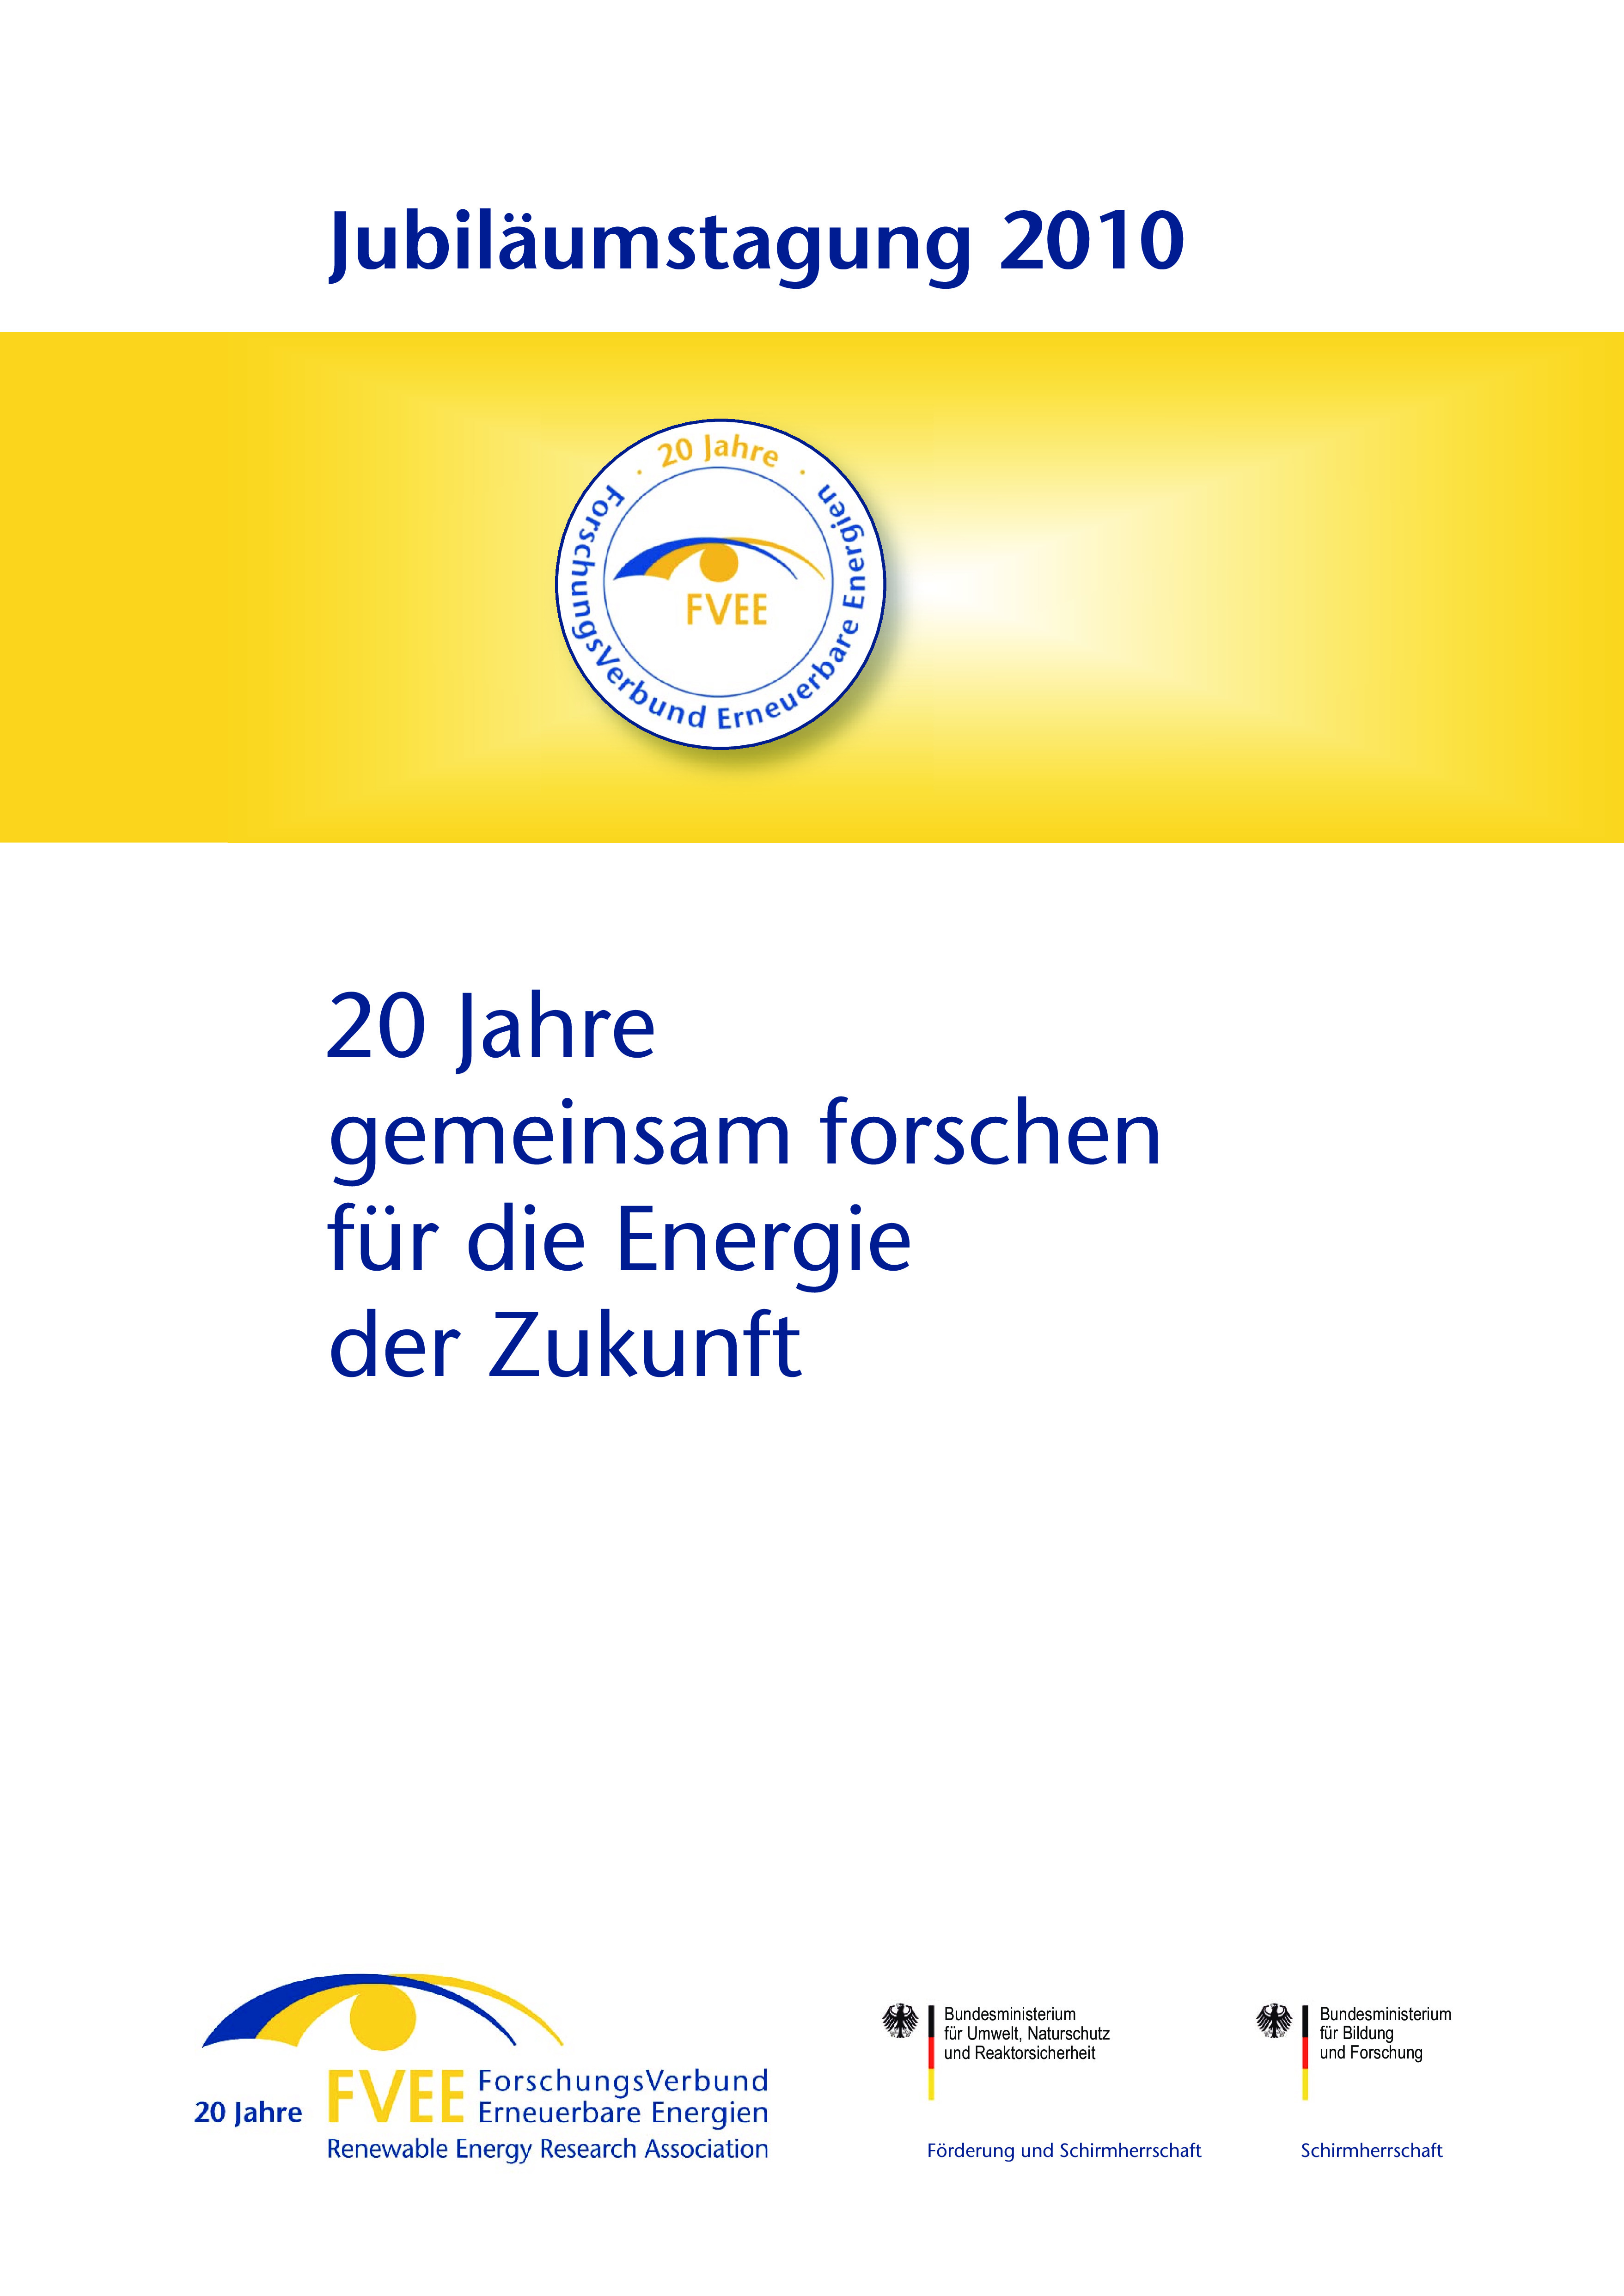 Jubiläumsband 2010: 20 Jahre gemeinsam forschen für die Energie der Zukunft